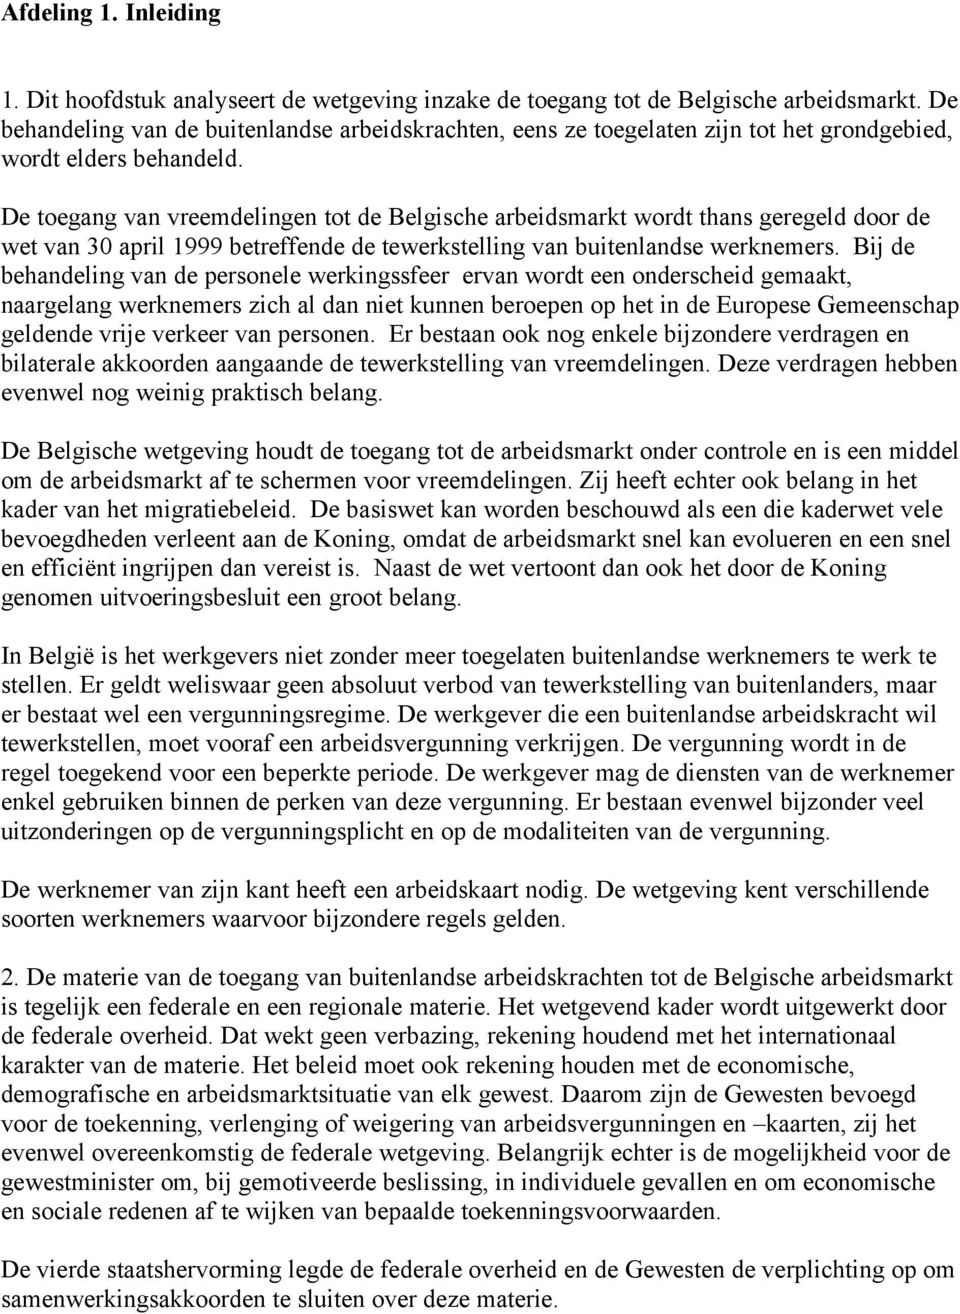 De toegang van vreemdelingen tot de Belgische arbeidsmarkt wordt thans geregeld door de wet van 30 april 1999 betreffende de tewerkstelling van buitenlandse werknemers.